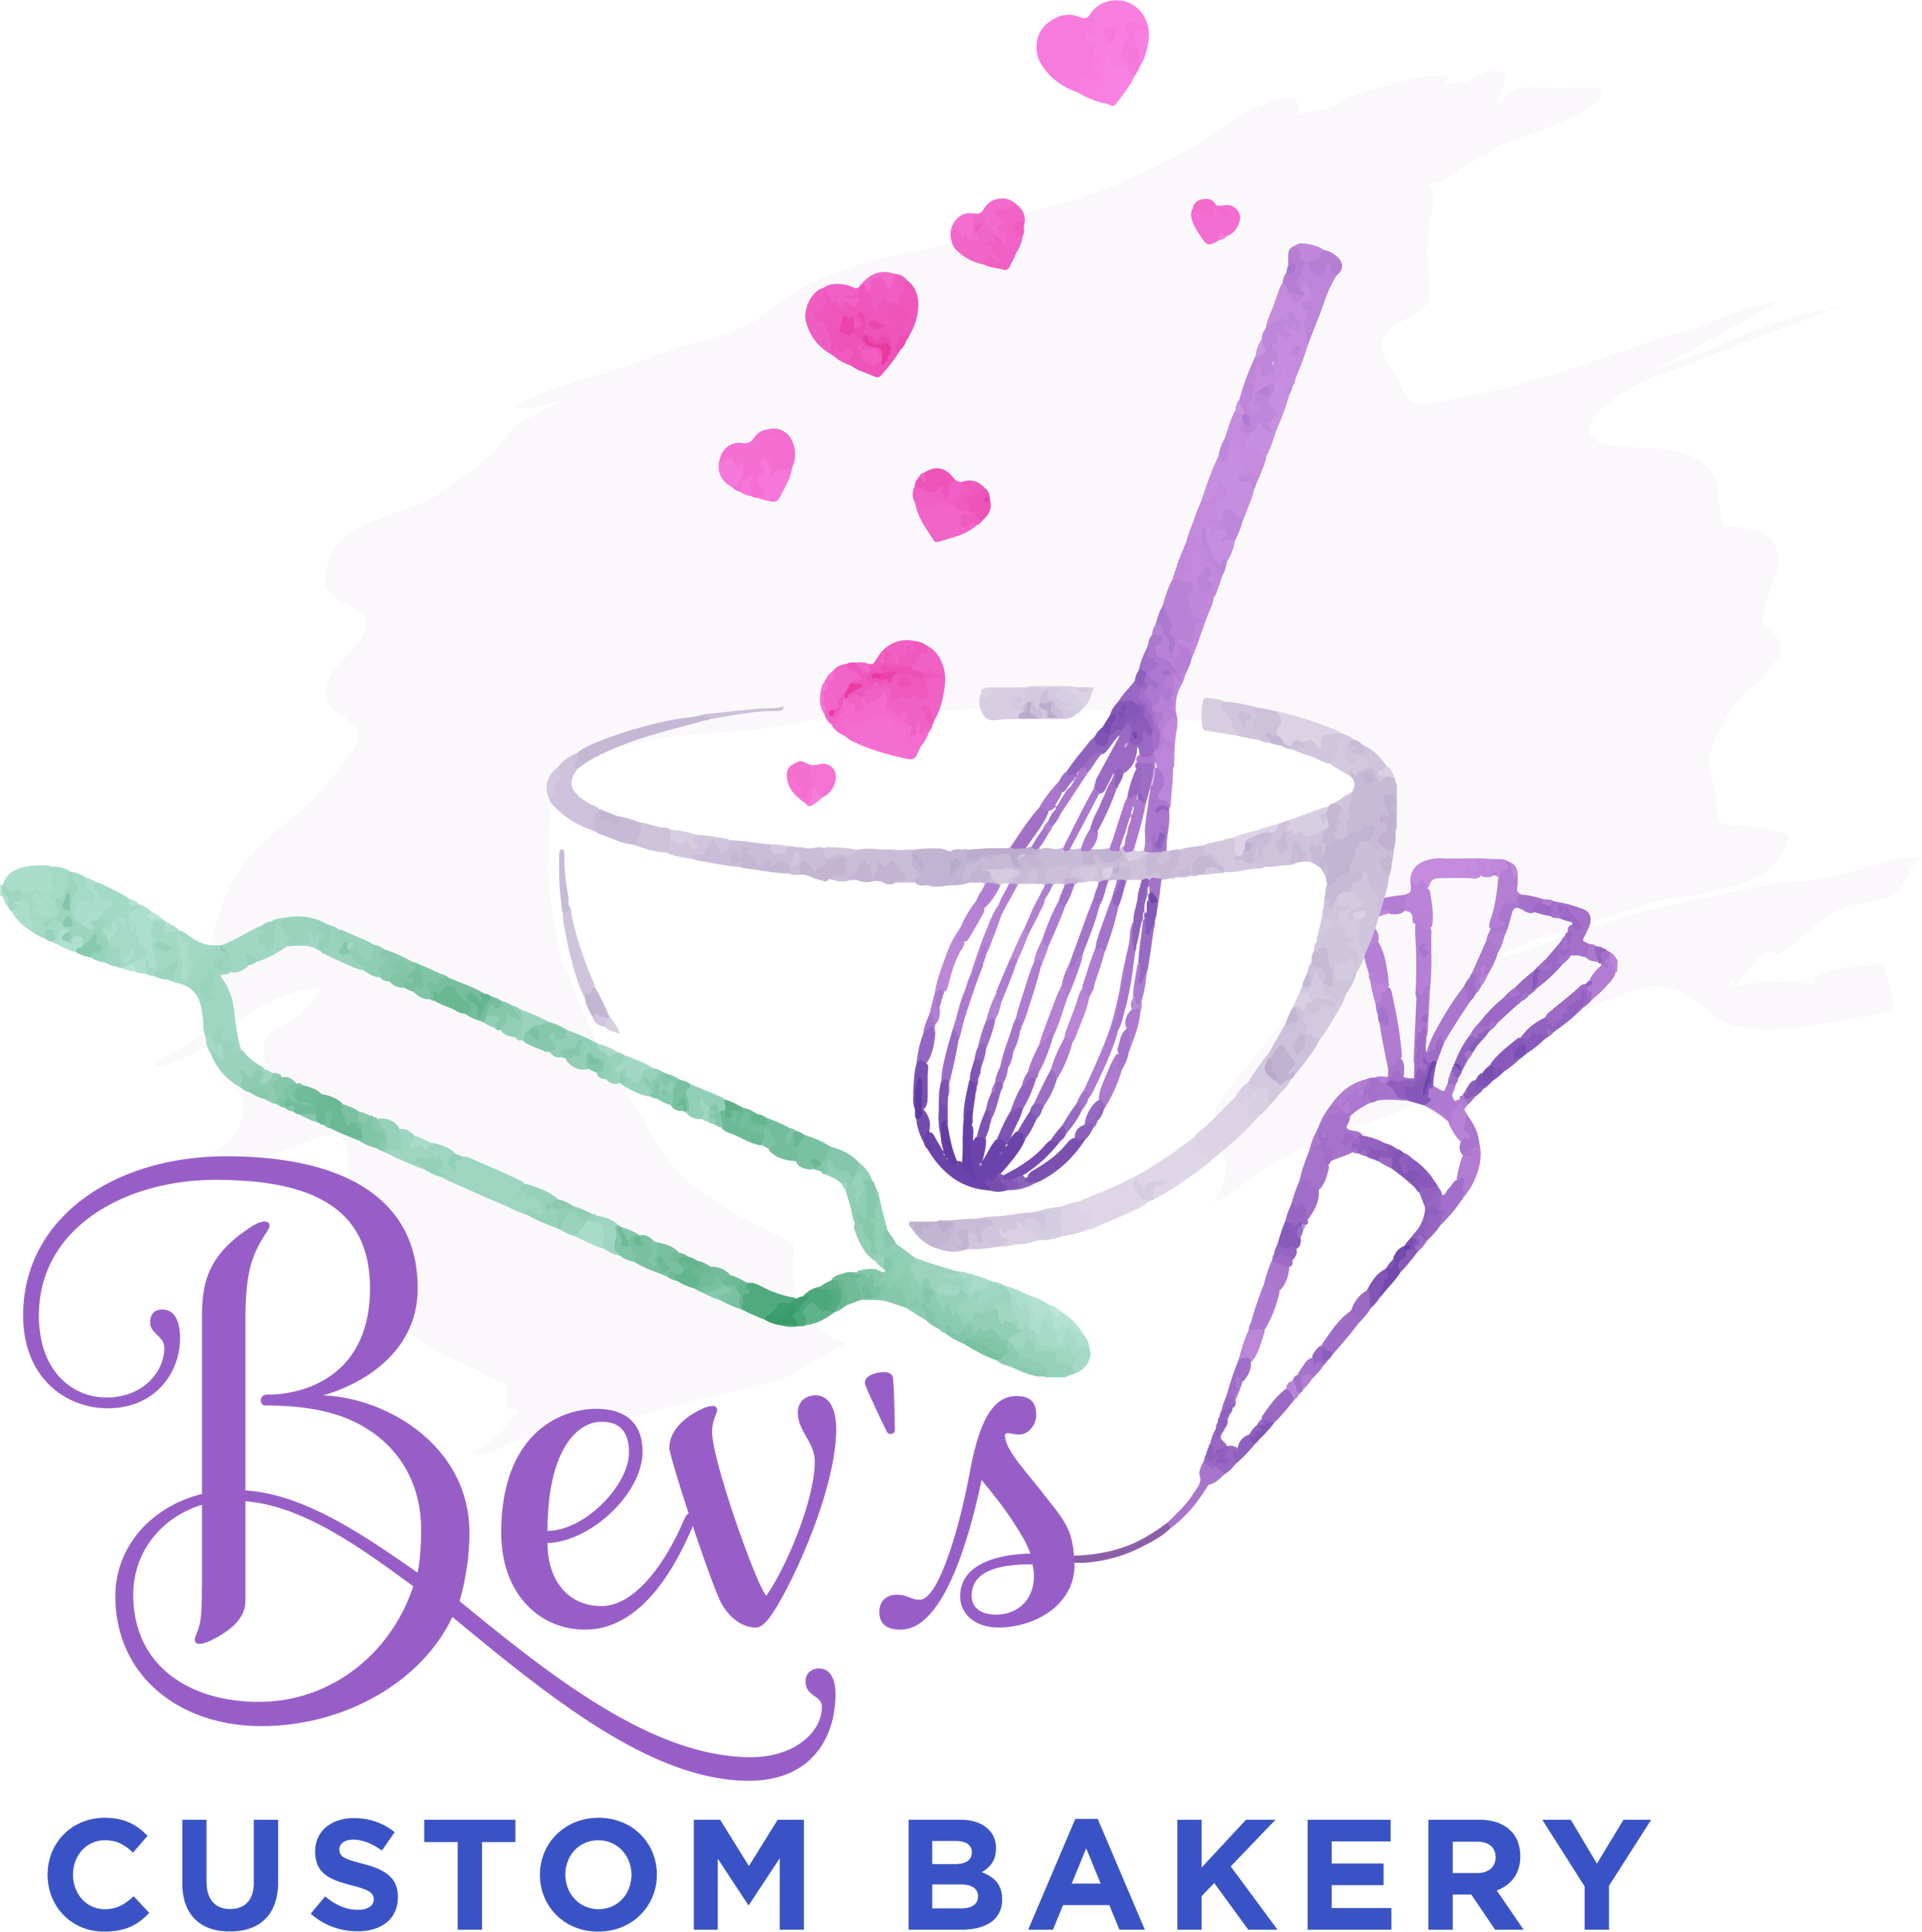 Cookie Scribe Tool  Bev's Custom Bakery